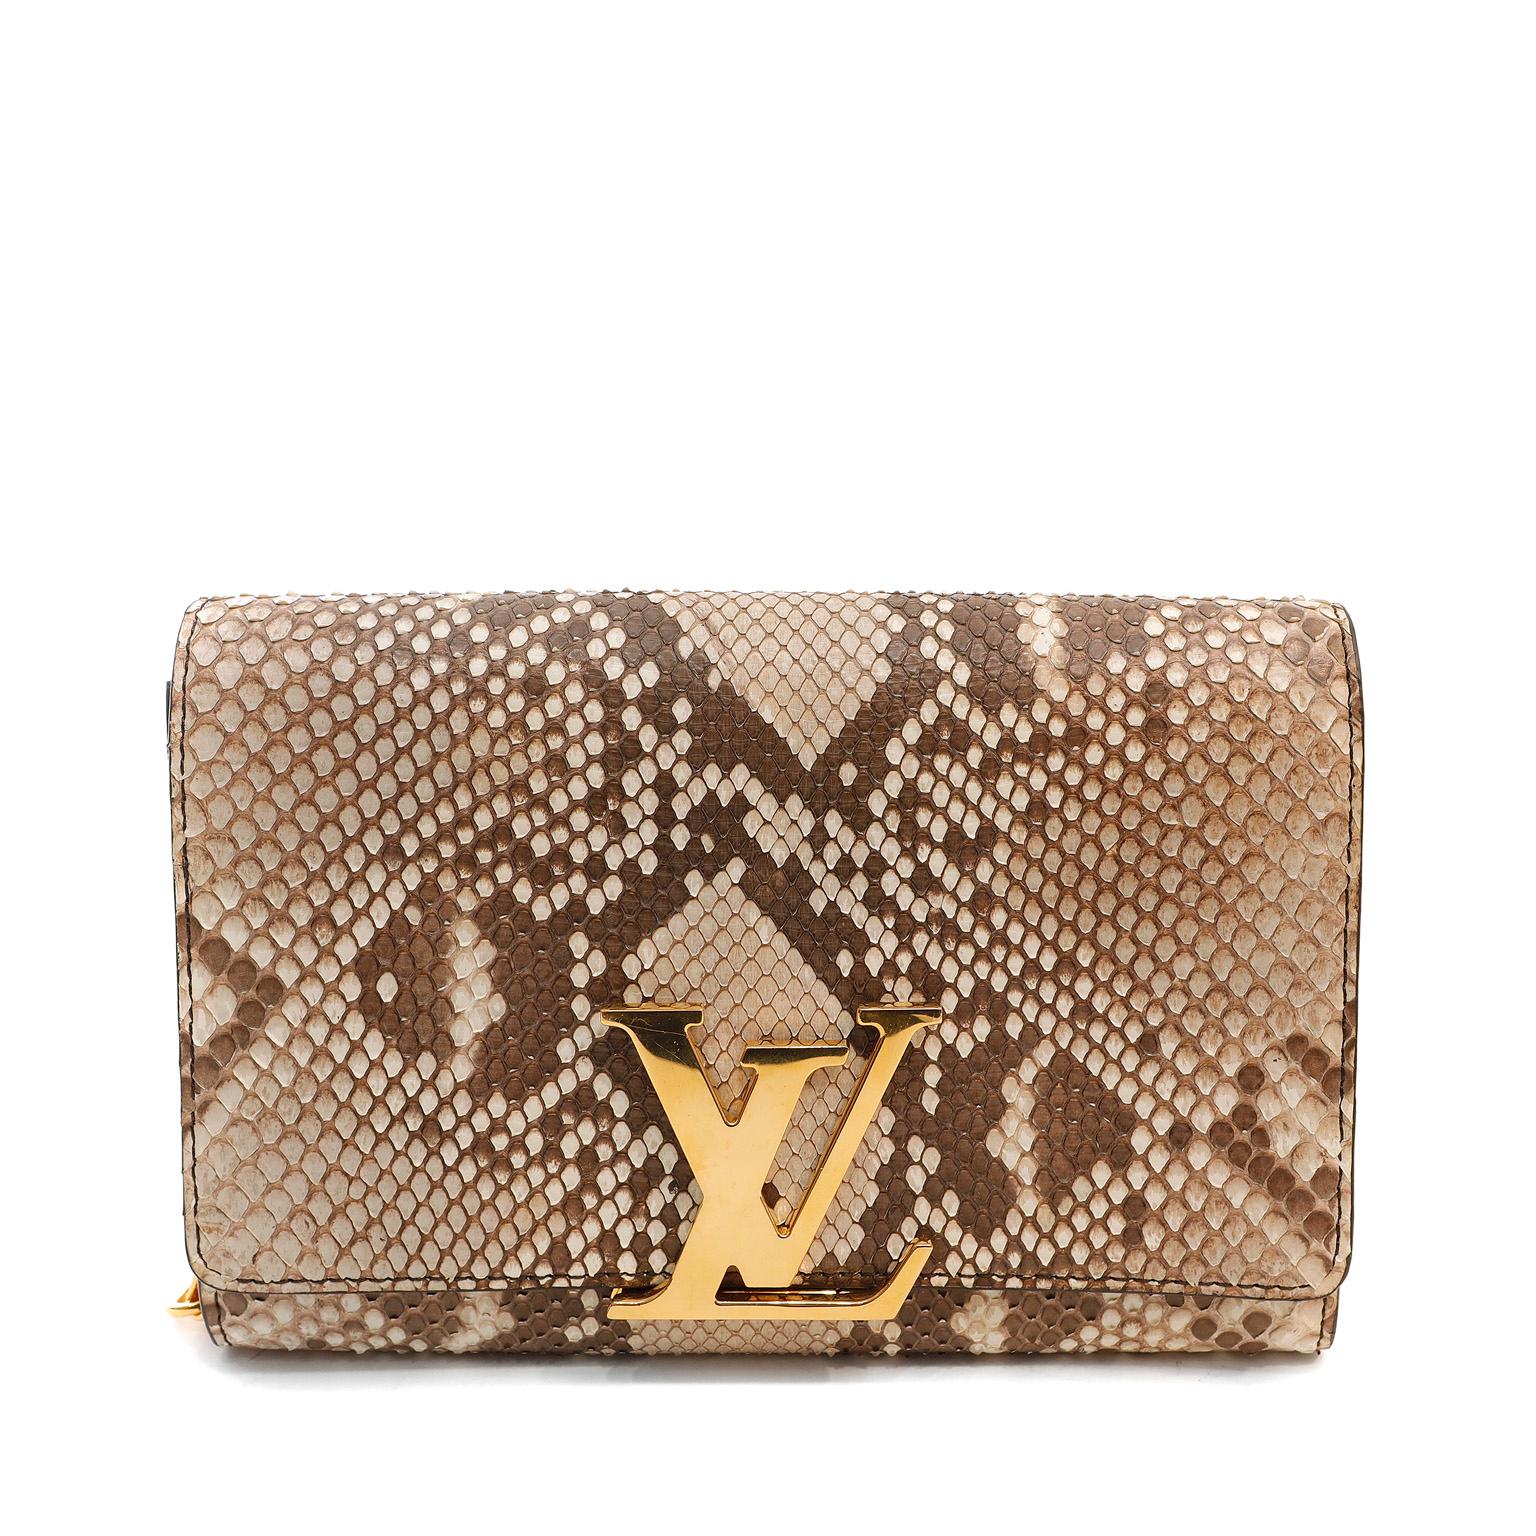 Diese authentische Louis Vuitton Beige Python Louise GM ist in ausgezeichnetem plus Zustand.  Diese neutrale Kettentasche in der GM Silhouette ist perfekt skaliert und passt zu jeder Gelegenheit.  Beigefarbenes und braunes Pythonleder mit